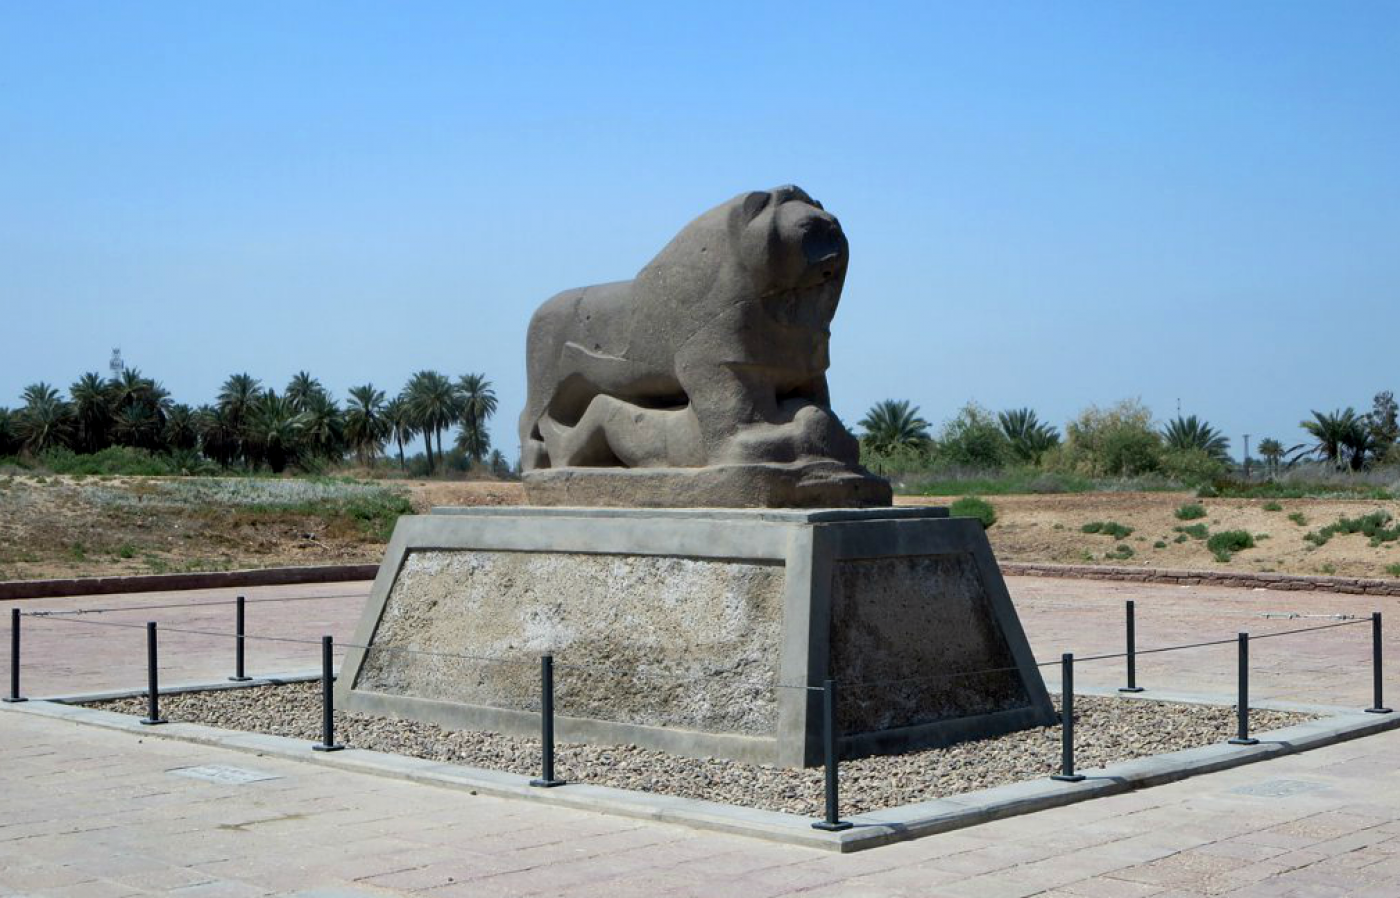 Le Lion de Babylone, fait de basalte noir, a été commandé par Nabuchodonosor II au Ve siècle av. J-C. Mis au jour en 1876, il pèse sept tonnes (Wikipédia)